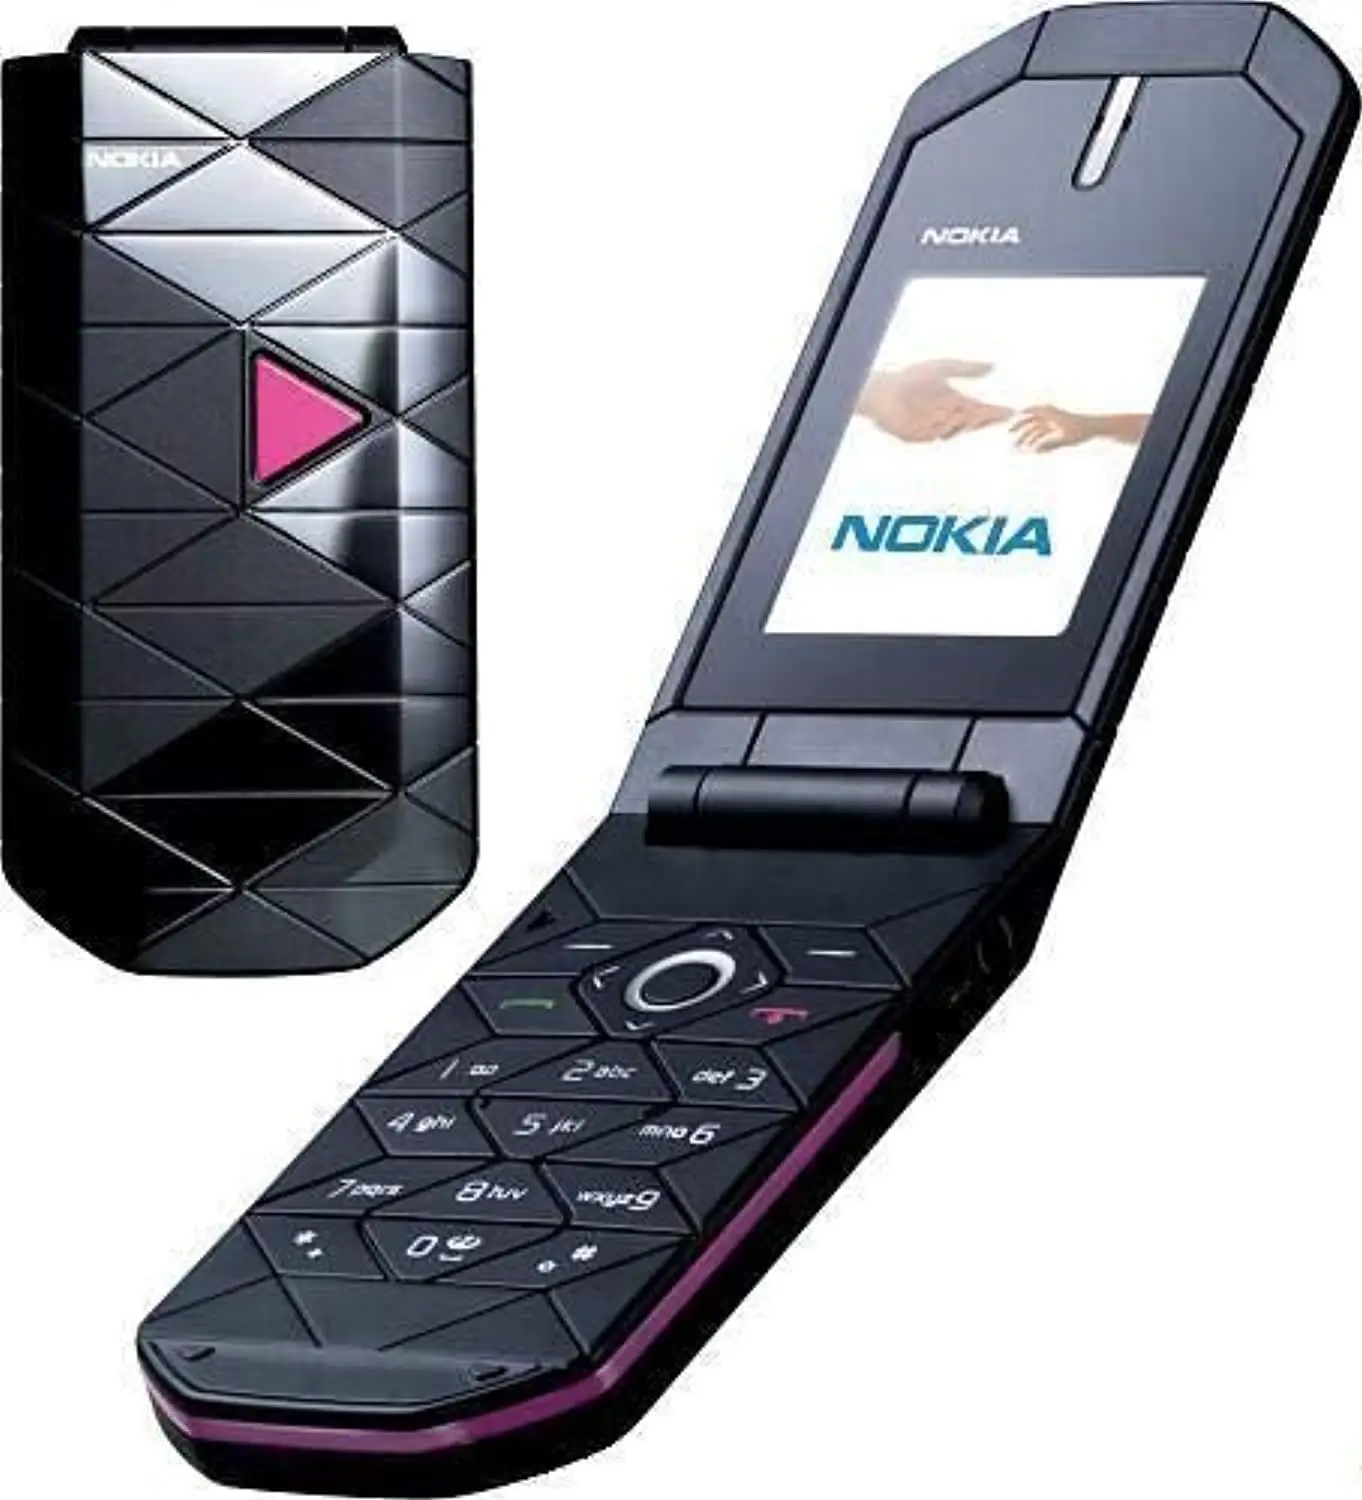 Tweedehands Mobiele Telefoon Voor Nokia 7070 Prisma Tweedehands Mobiele Telefoon Hoge Kwaliteit Flip Telefoon Groothandel Goedkope Prijs Snelle Levering